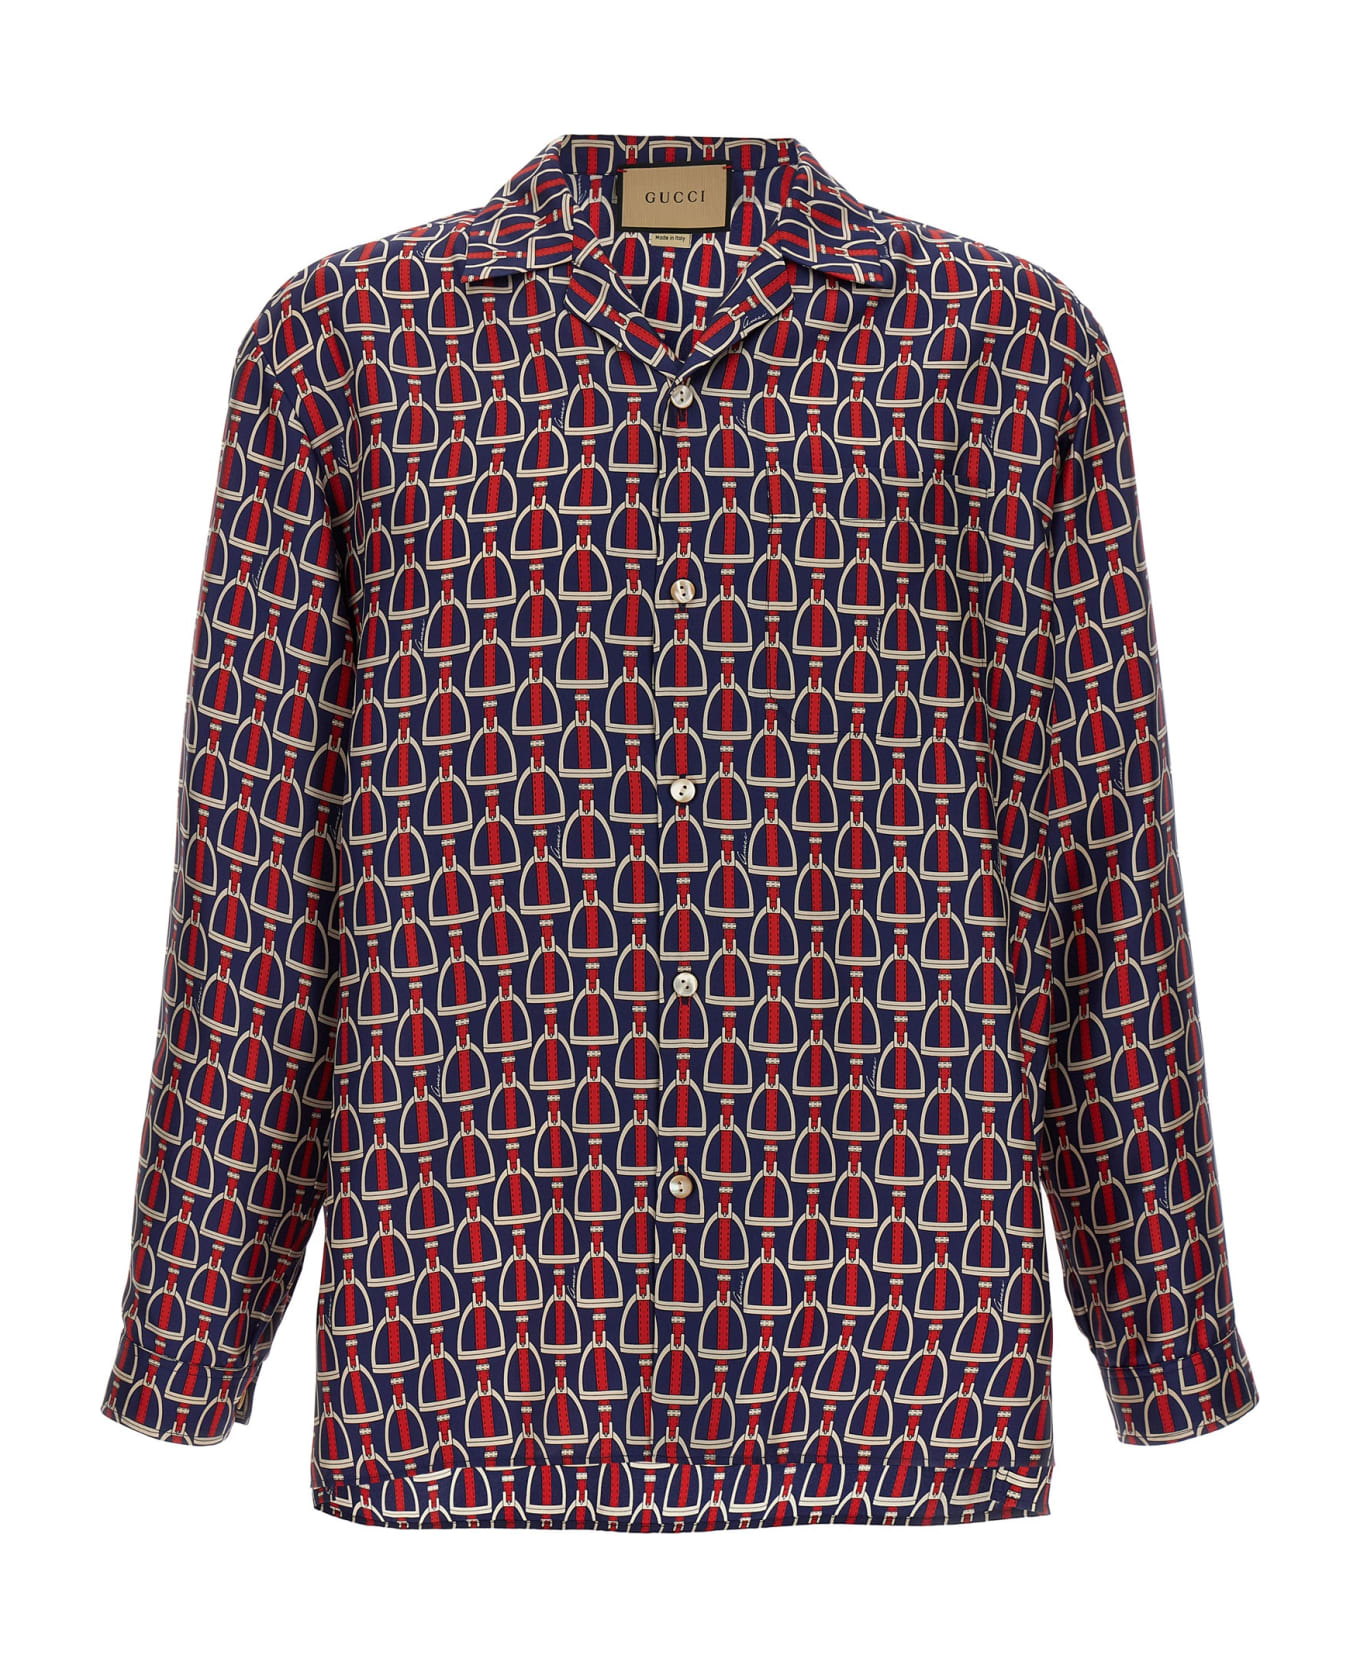 Gucci 'morsetto' Shirt - Multicolor